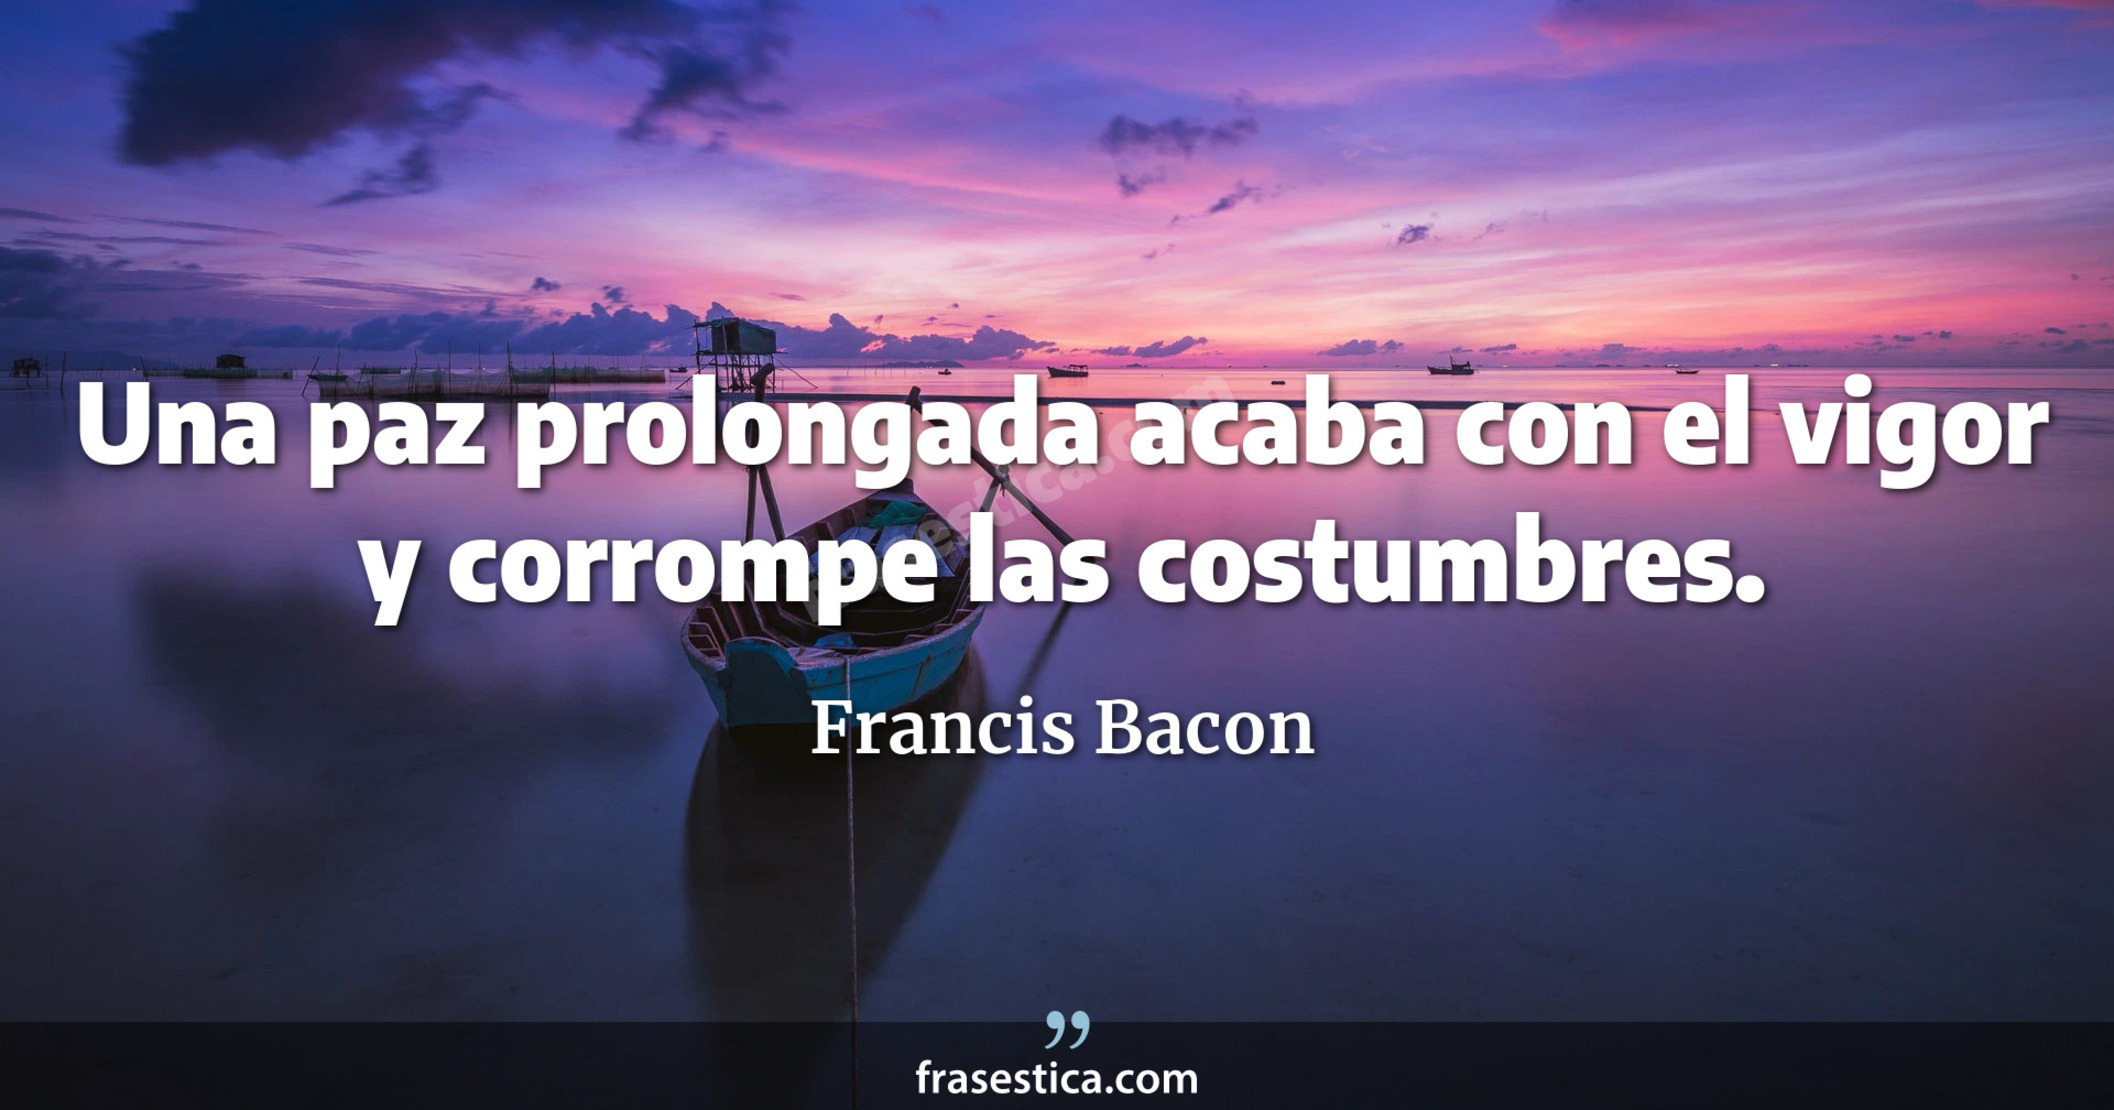 Una paz prolongada acaba con el vigor y corrompe las costumbres. - Francis Bacon